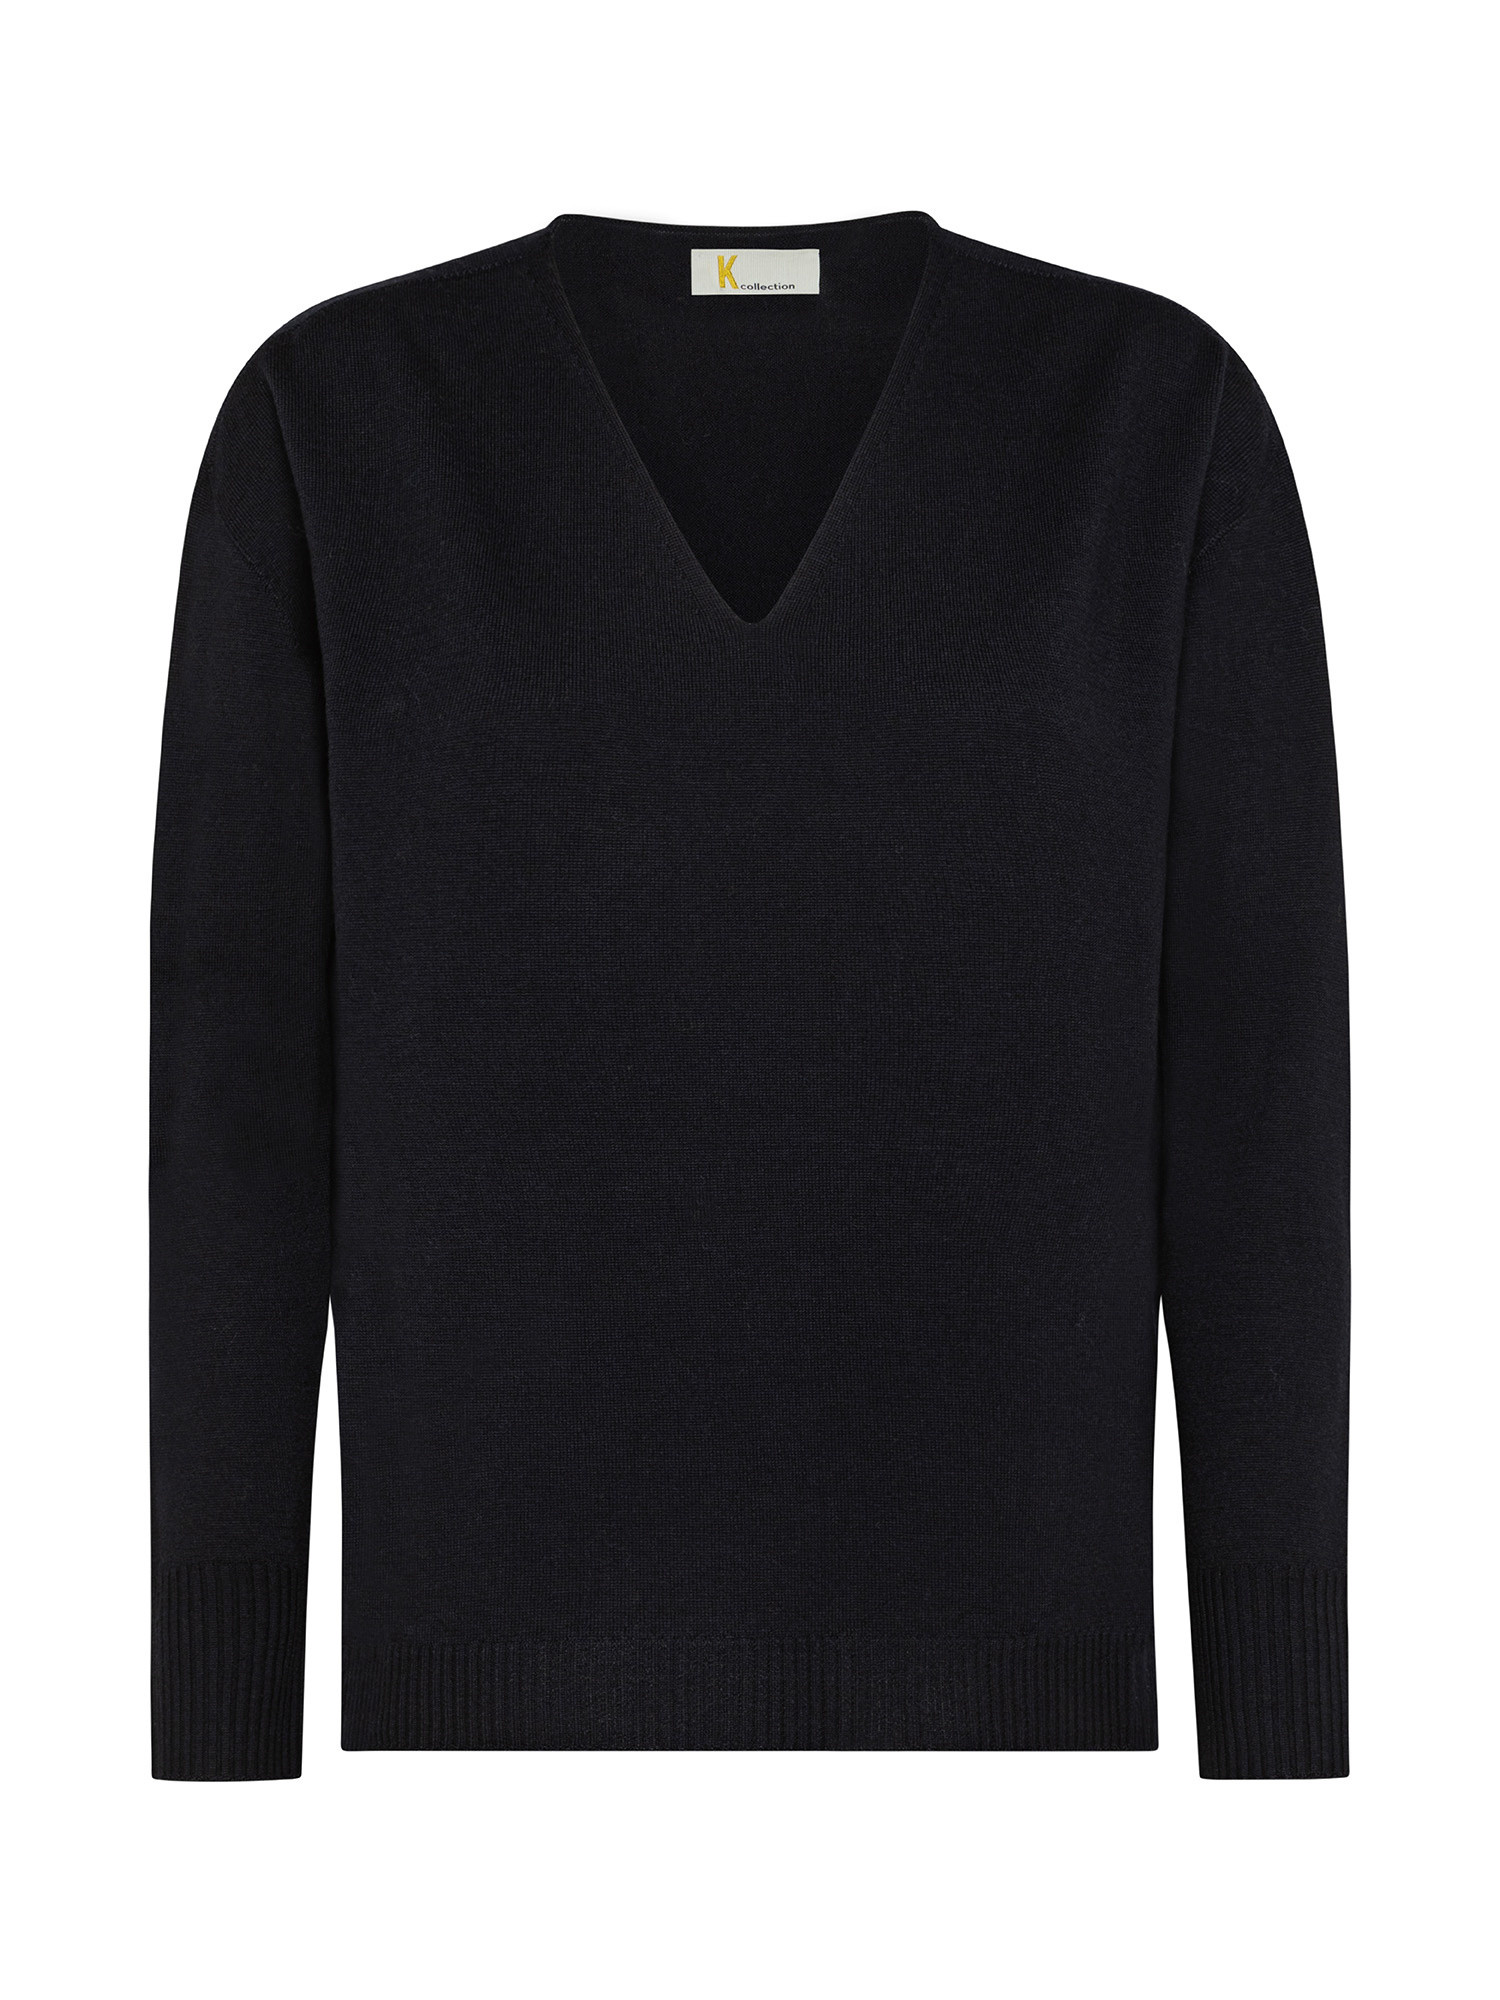 K Collection - V-neck sweater, Black, large image number 0